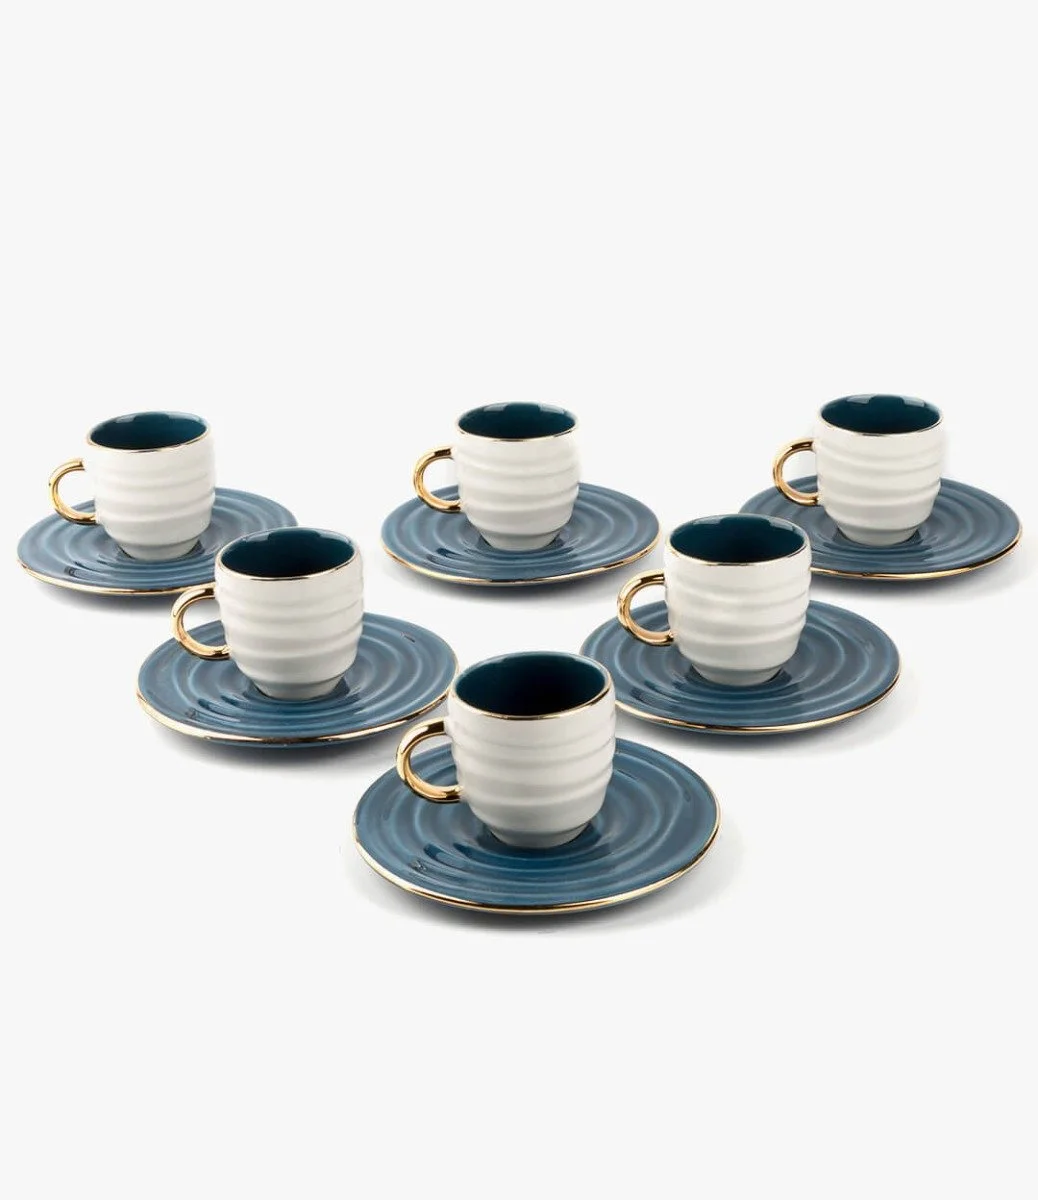 أزرق - طقم قهوة تركية لـ 6 أشخاص من هارموني